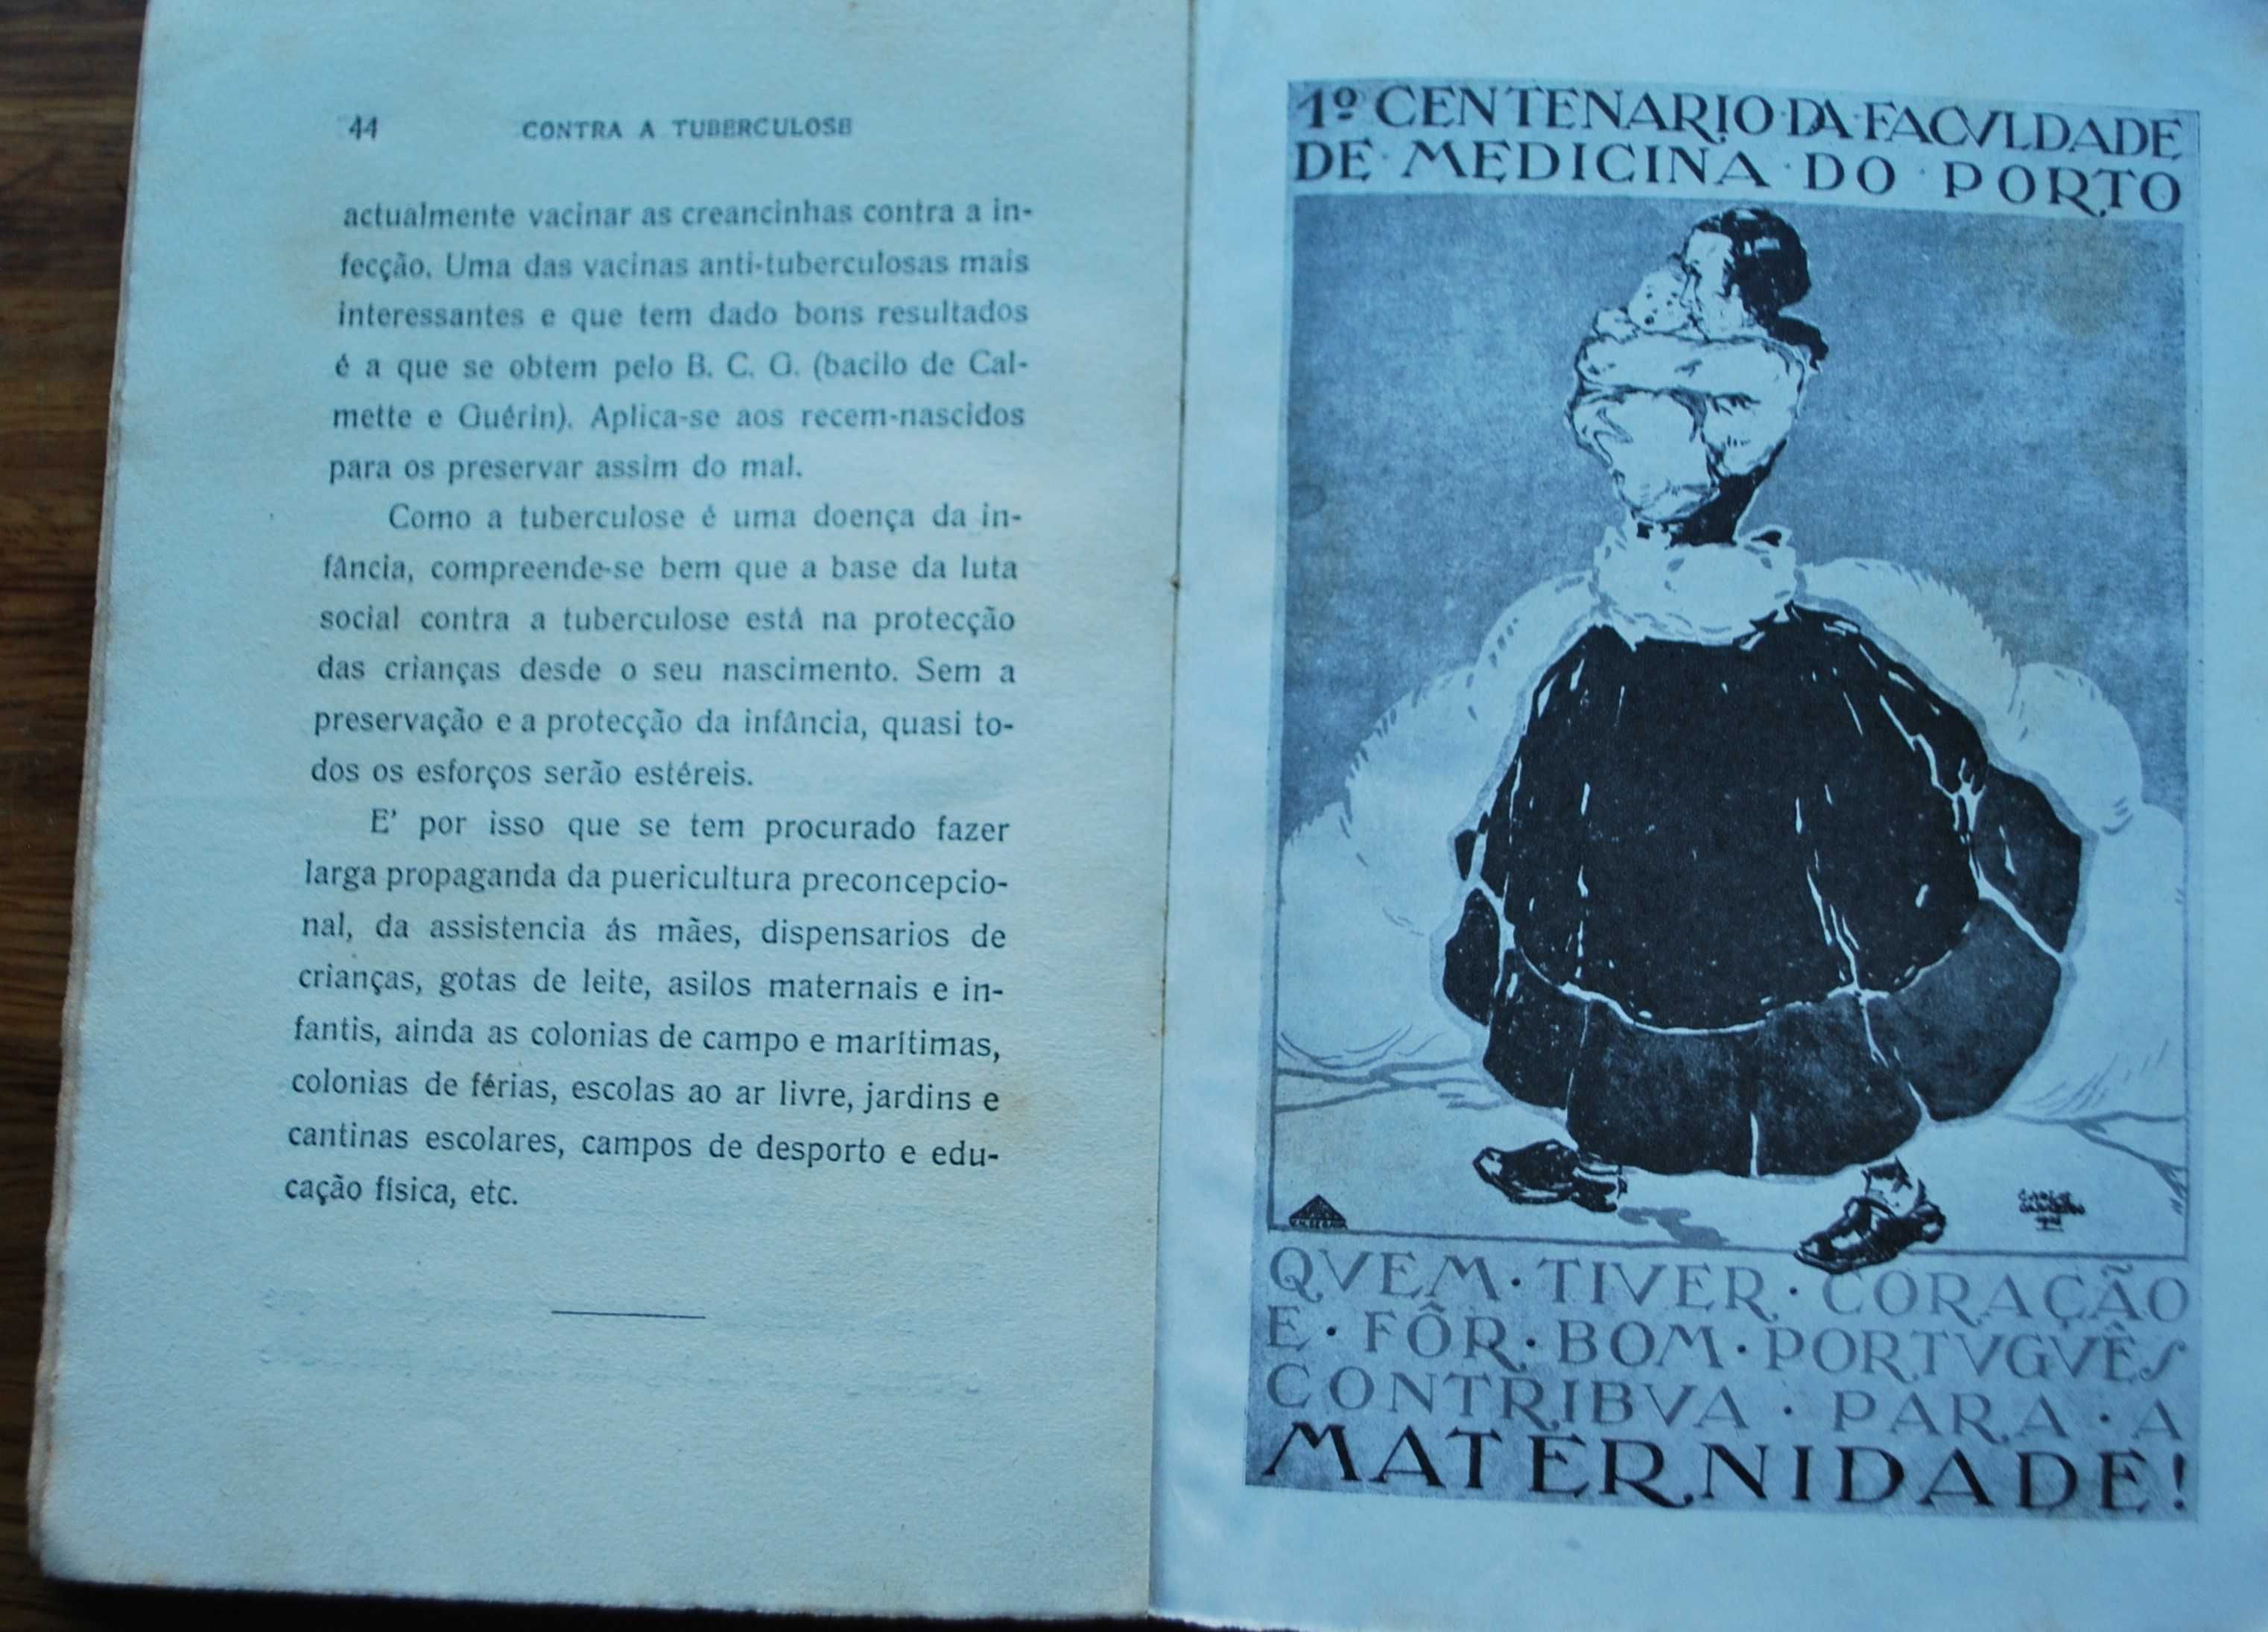 Contra A Tuberculose do Dr. Cardoso do Carmo - Ano de Edição 1927